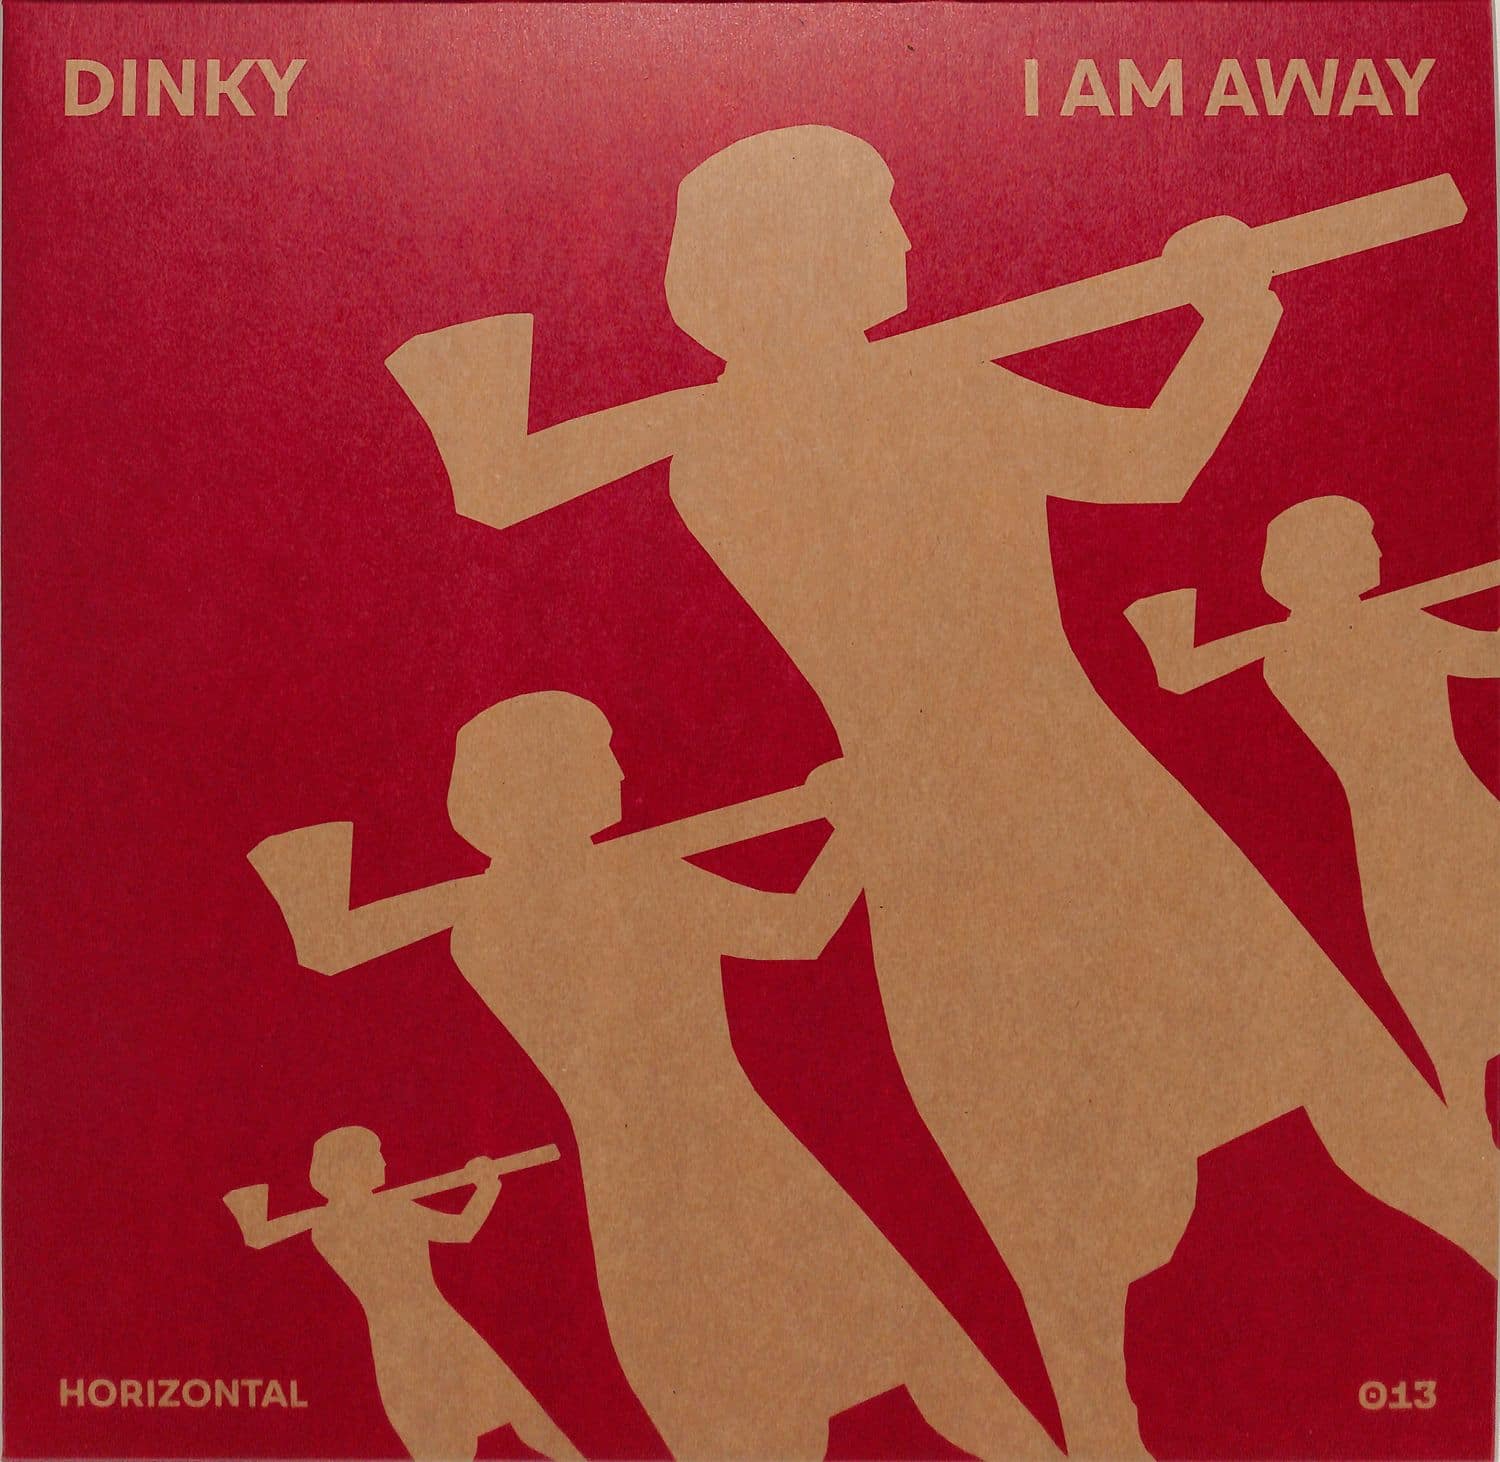 Dinky - I AM AWAY